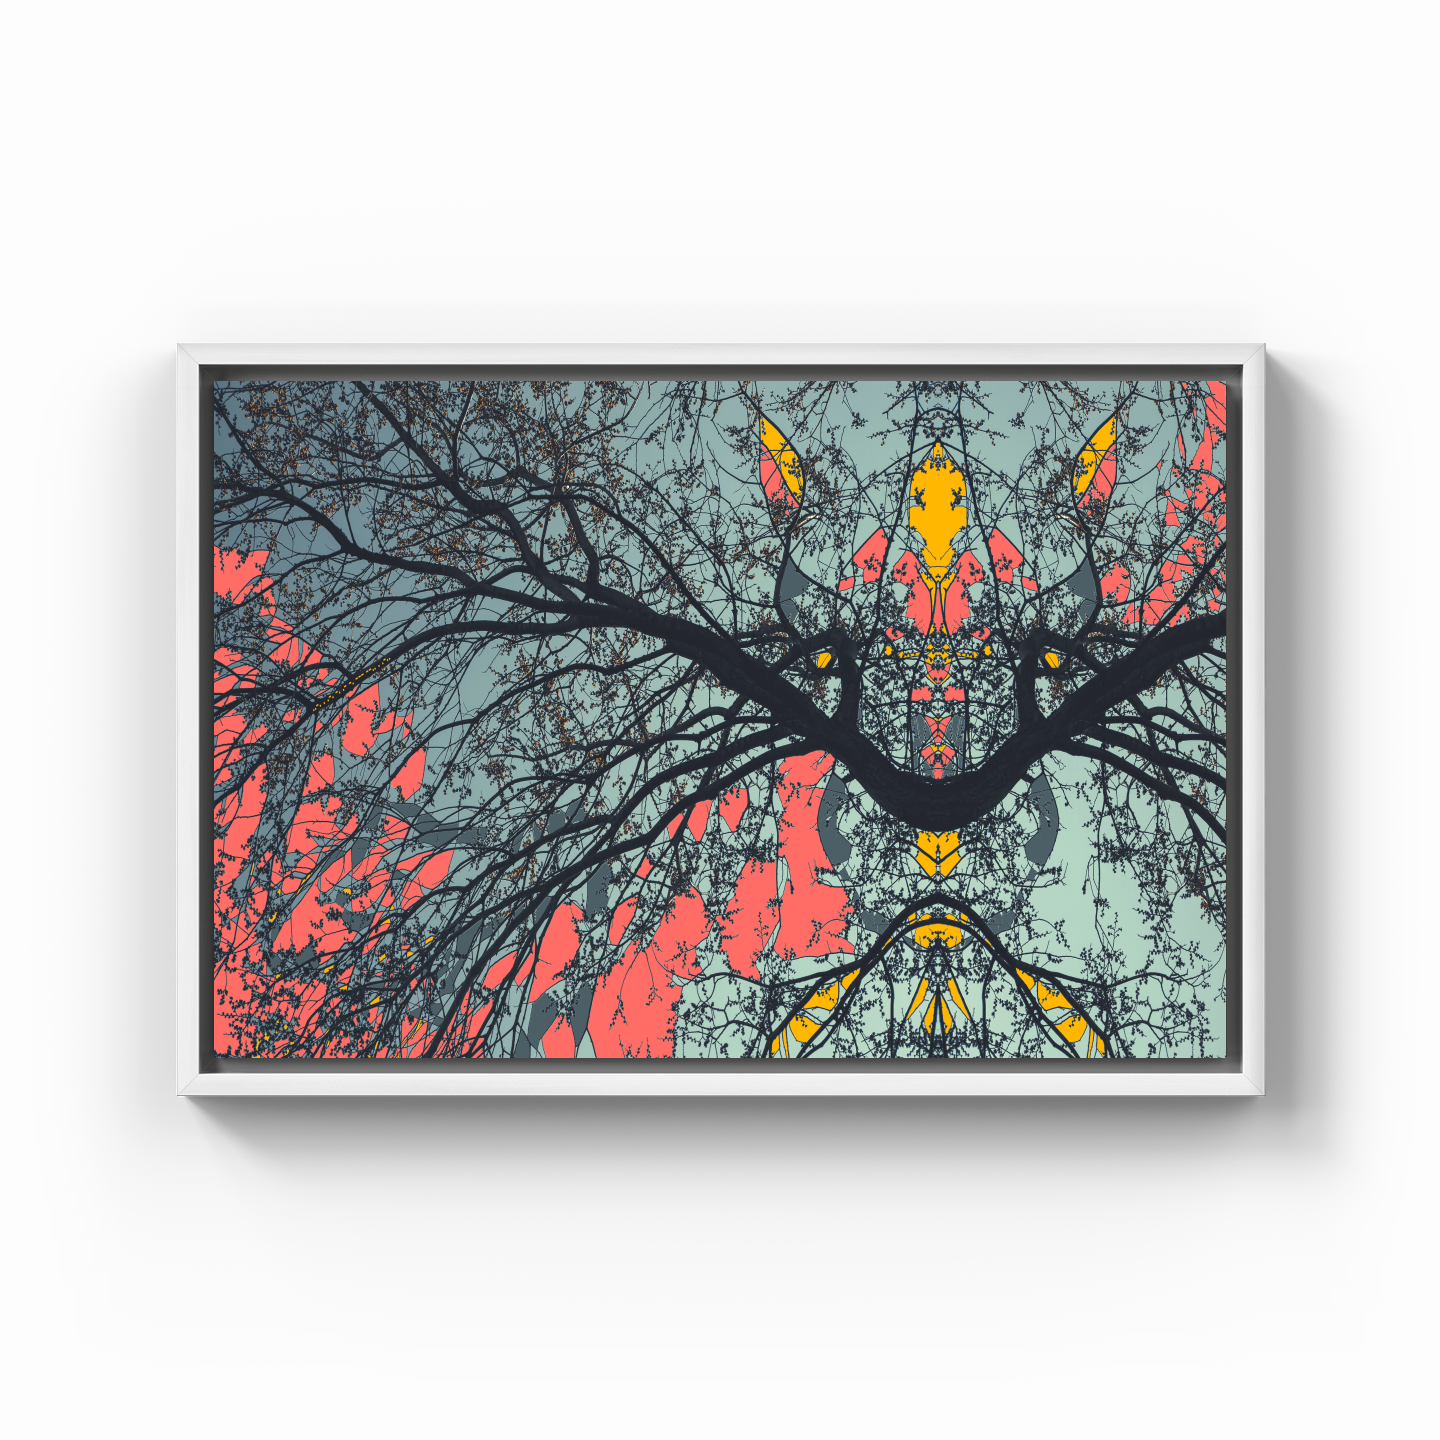 Simetri Ağaç Dal Orman Ekspresyonist Abstrakt Manzara No 02 - Kanvas Tablo